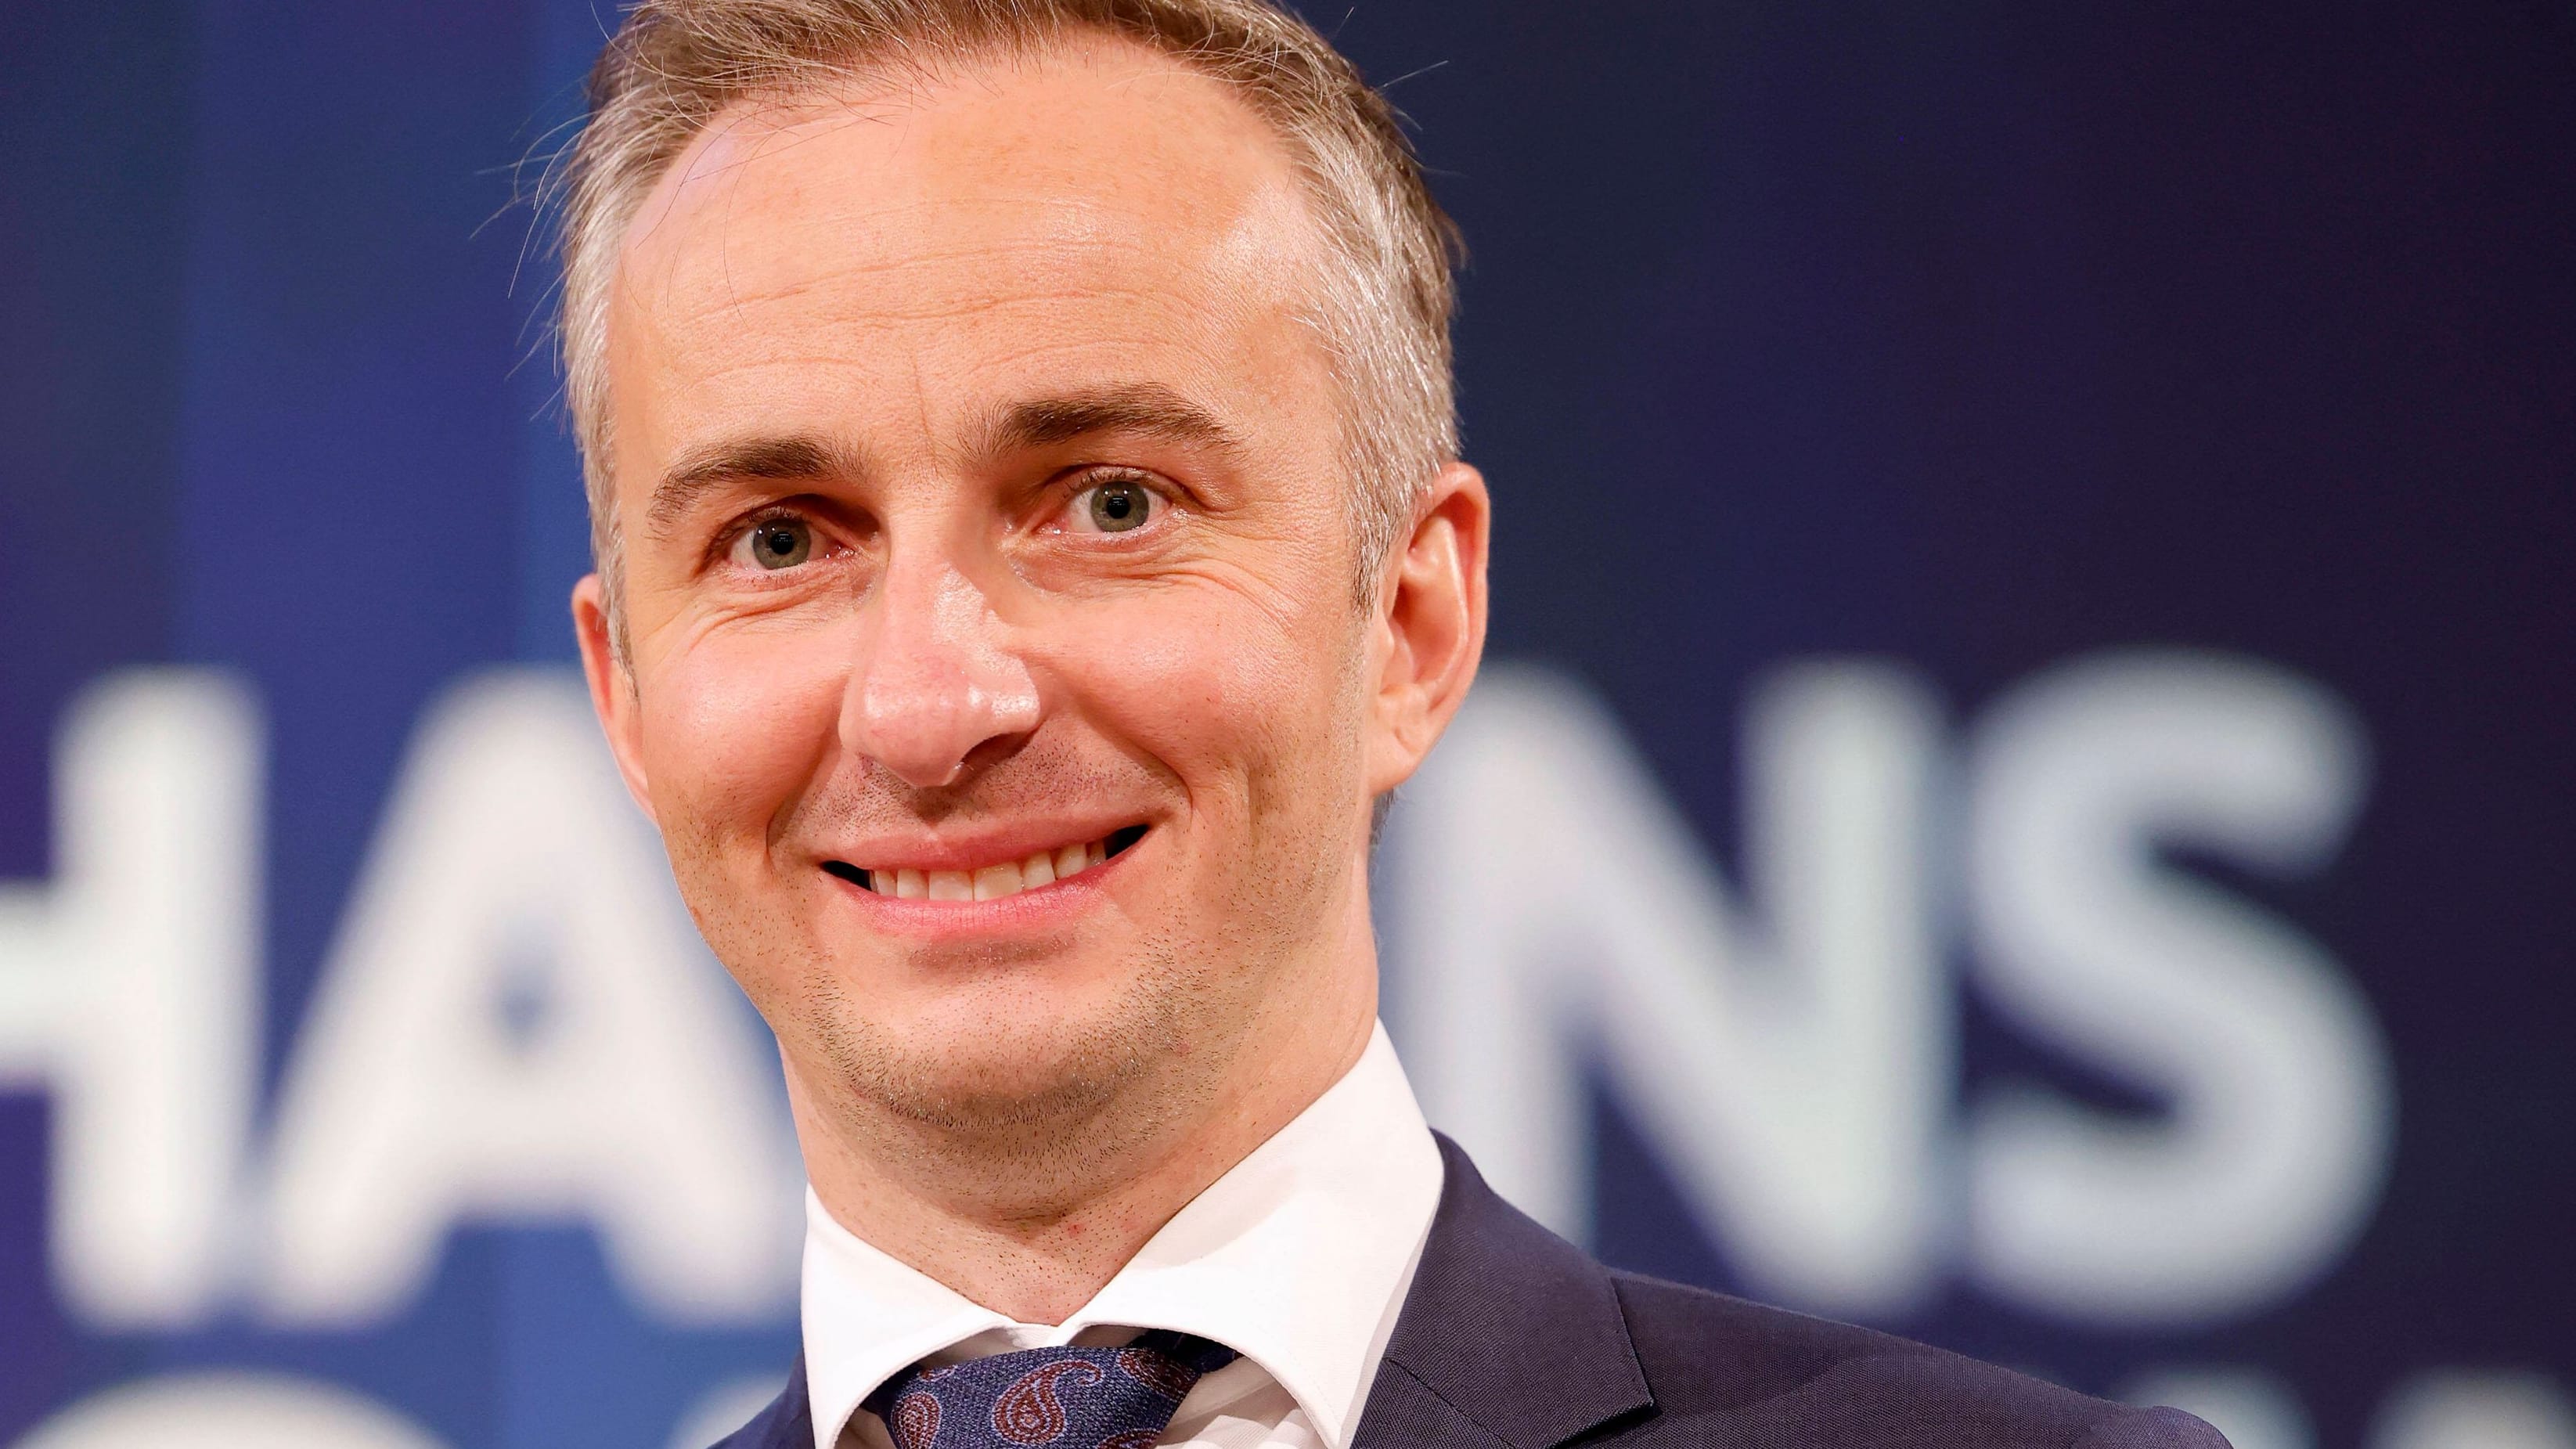 Böhmermann leakt NSU-Akten: CDU wirft ihm Überschreitung der Pressefreiheit vor